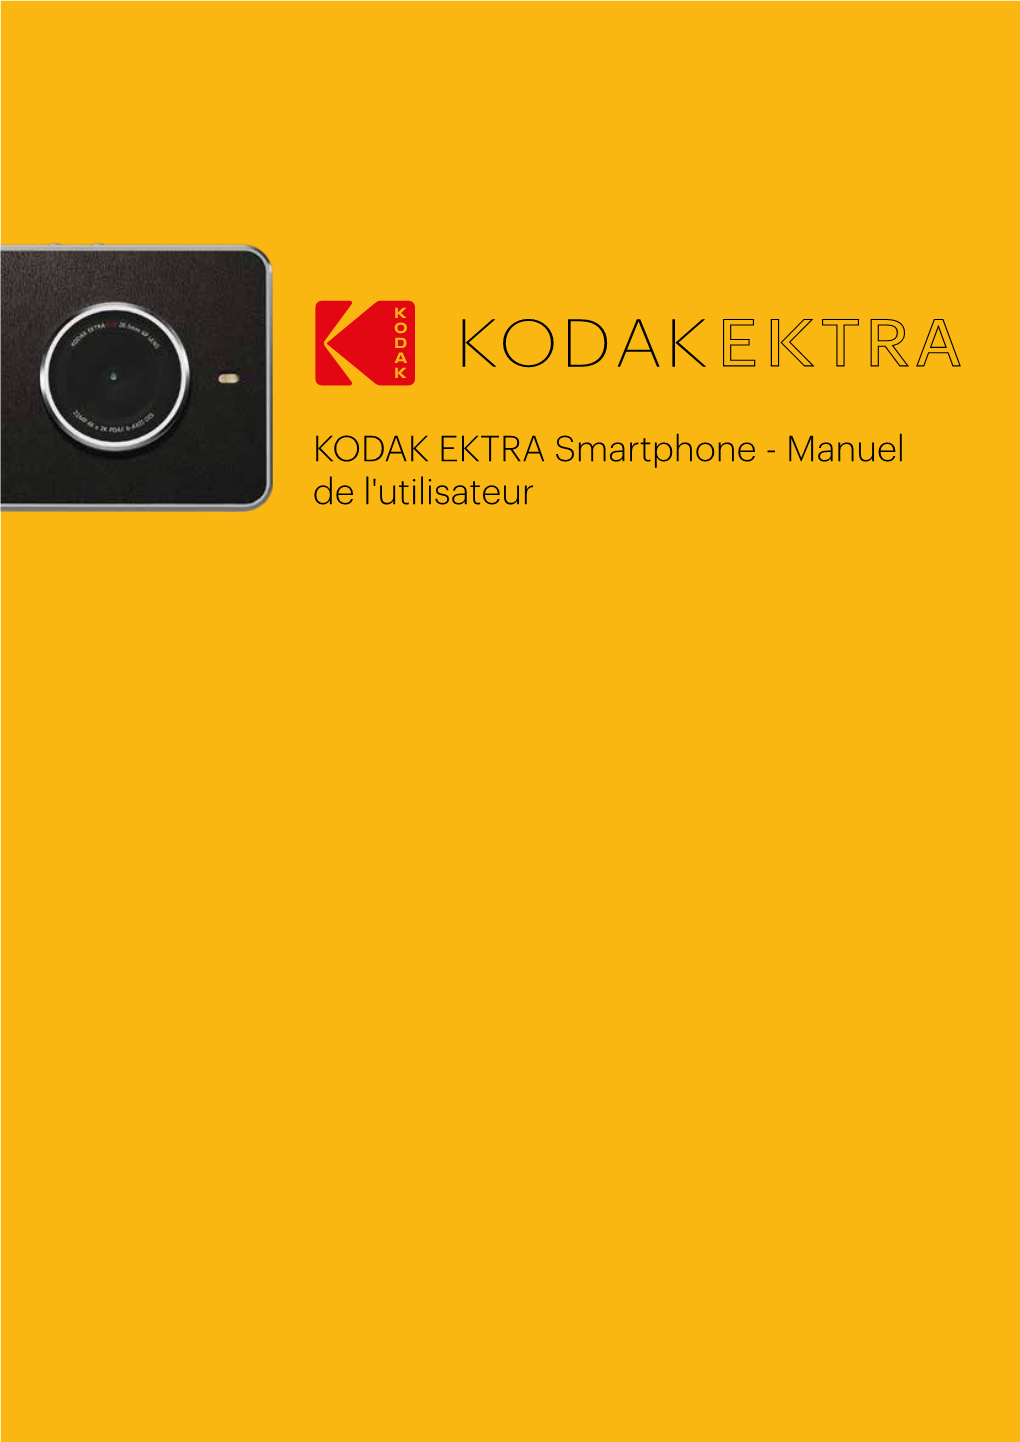 KODAK EKTRA Smartphone - Manuel De L'utilisateur